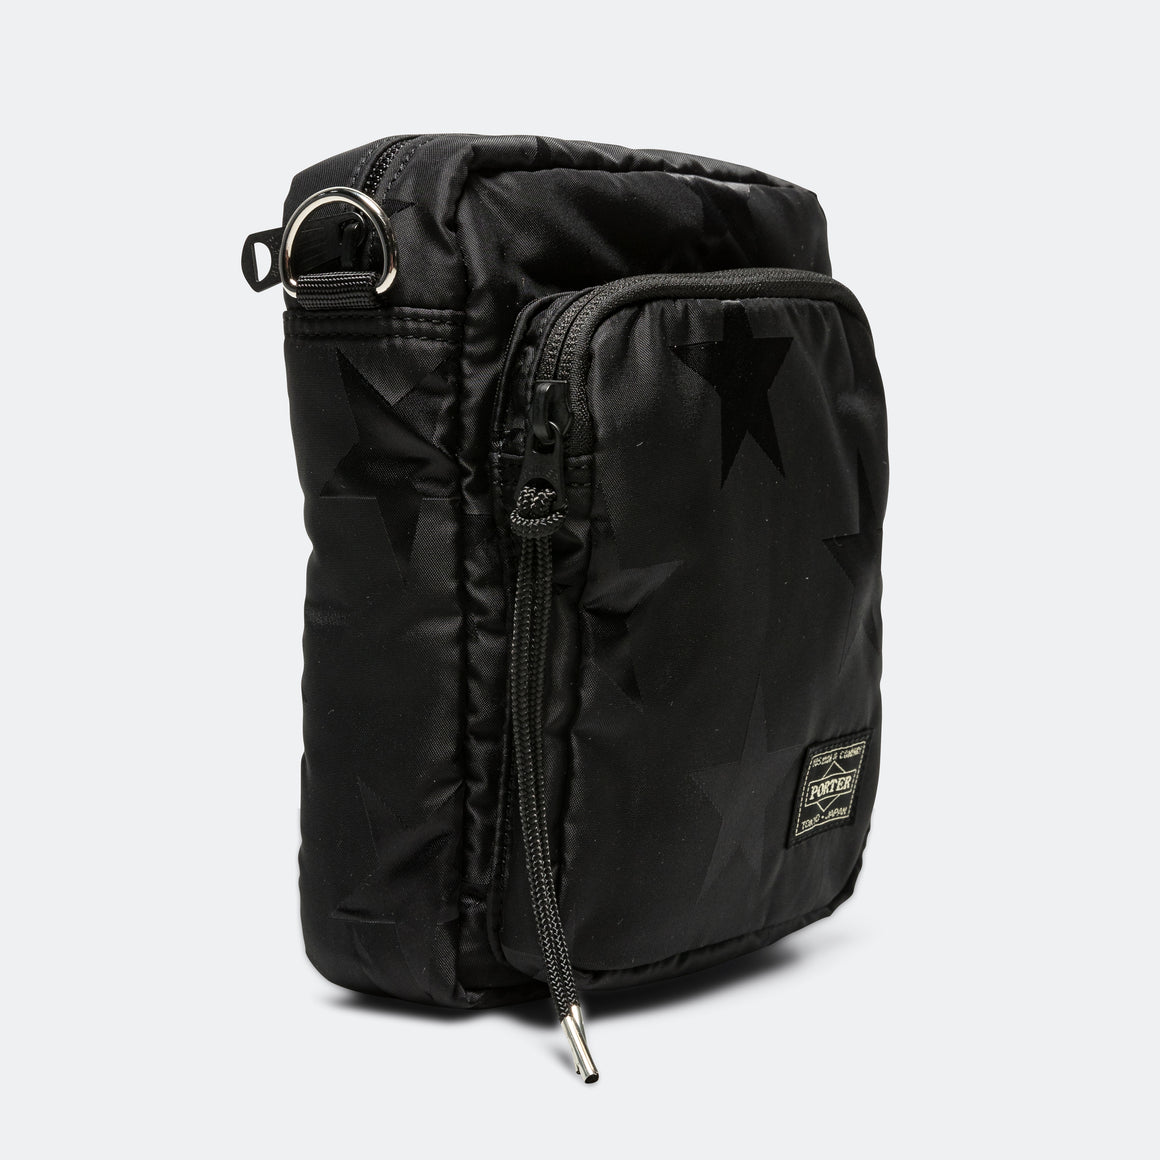 Porter Yoshida & Co - Flag Shoulder Bag Vertical - Black - UP THERE